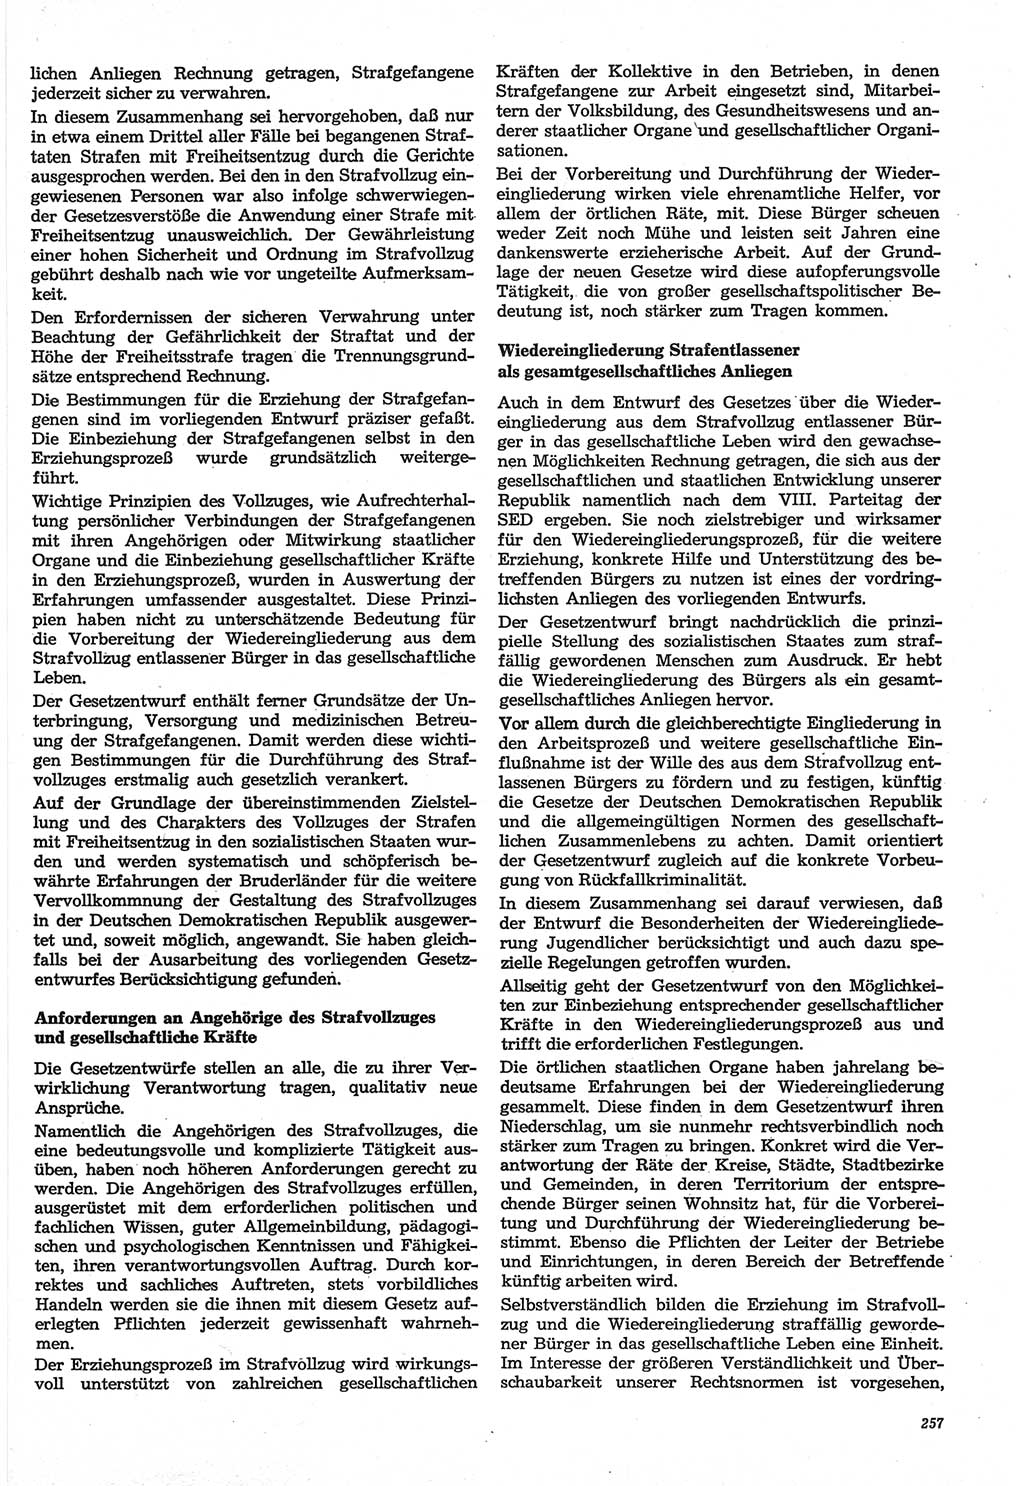 Neue Justiz (NJ), Zeitschrift für Recht und Rechtswissenschaft-Zeitschrift, sozialistisches Recht und Gesetzlichkeit, 31. Jahrgang 1977, Seite 257 (NJ DDR 1977, S. 257)